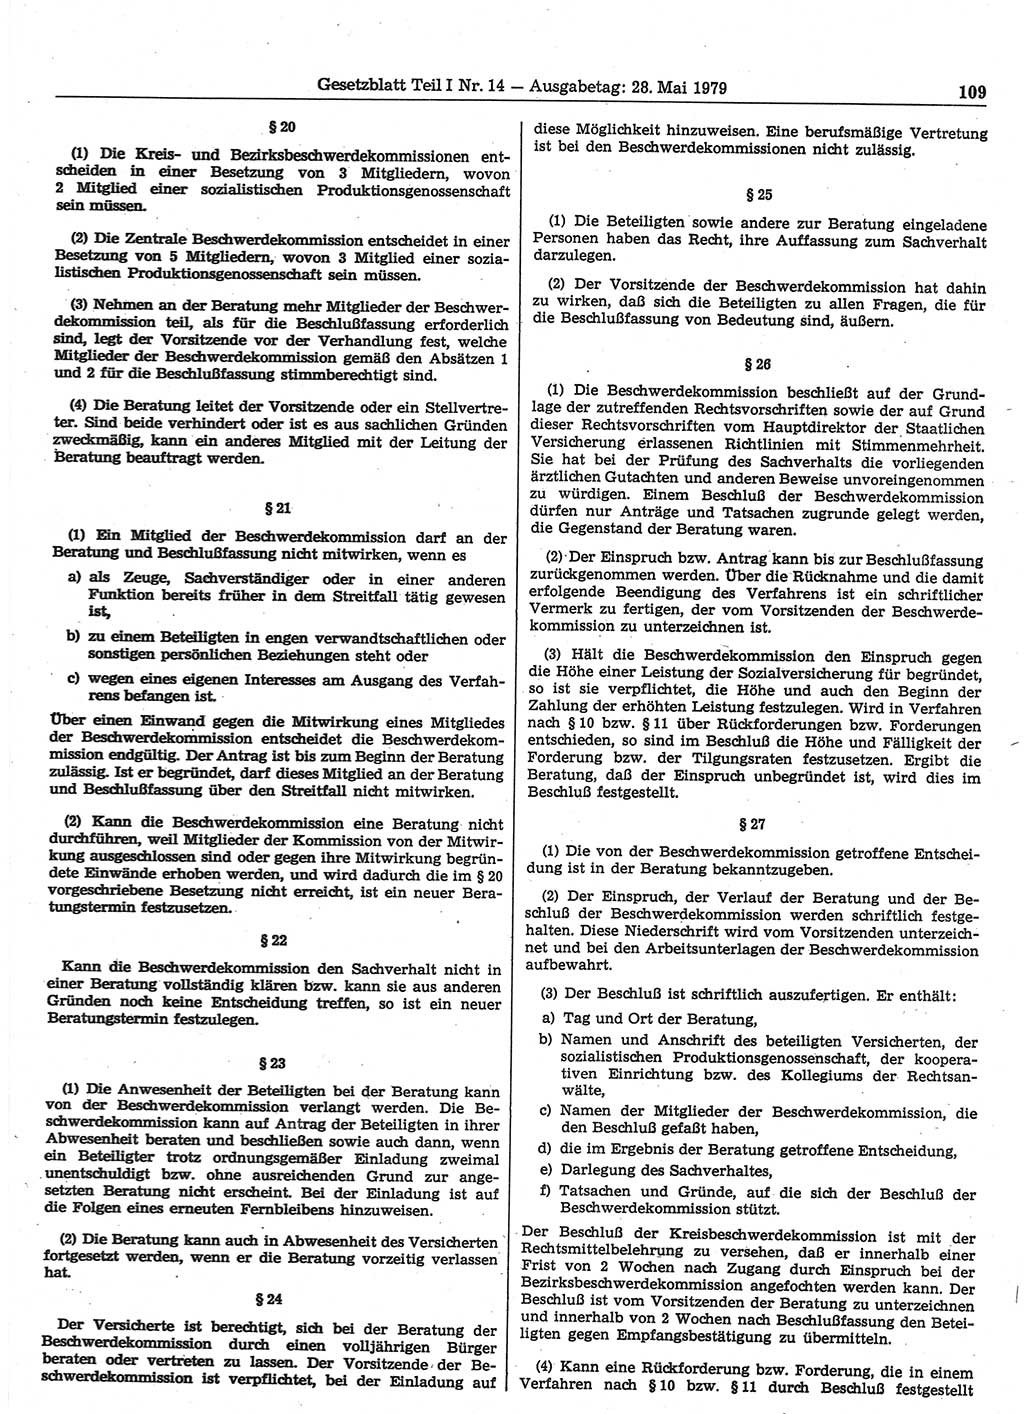 Gesetzblatt (GBl.) der Deutschen Demokratischen Republik (DDR) Teil Ⅰ 1979, Seite 109 (GBl. DDR Ⅰ 1979, S. 109)